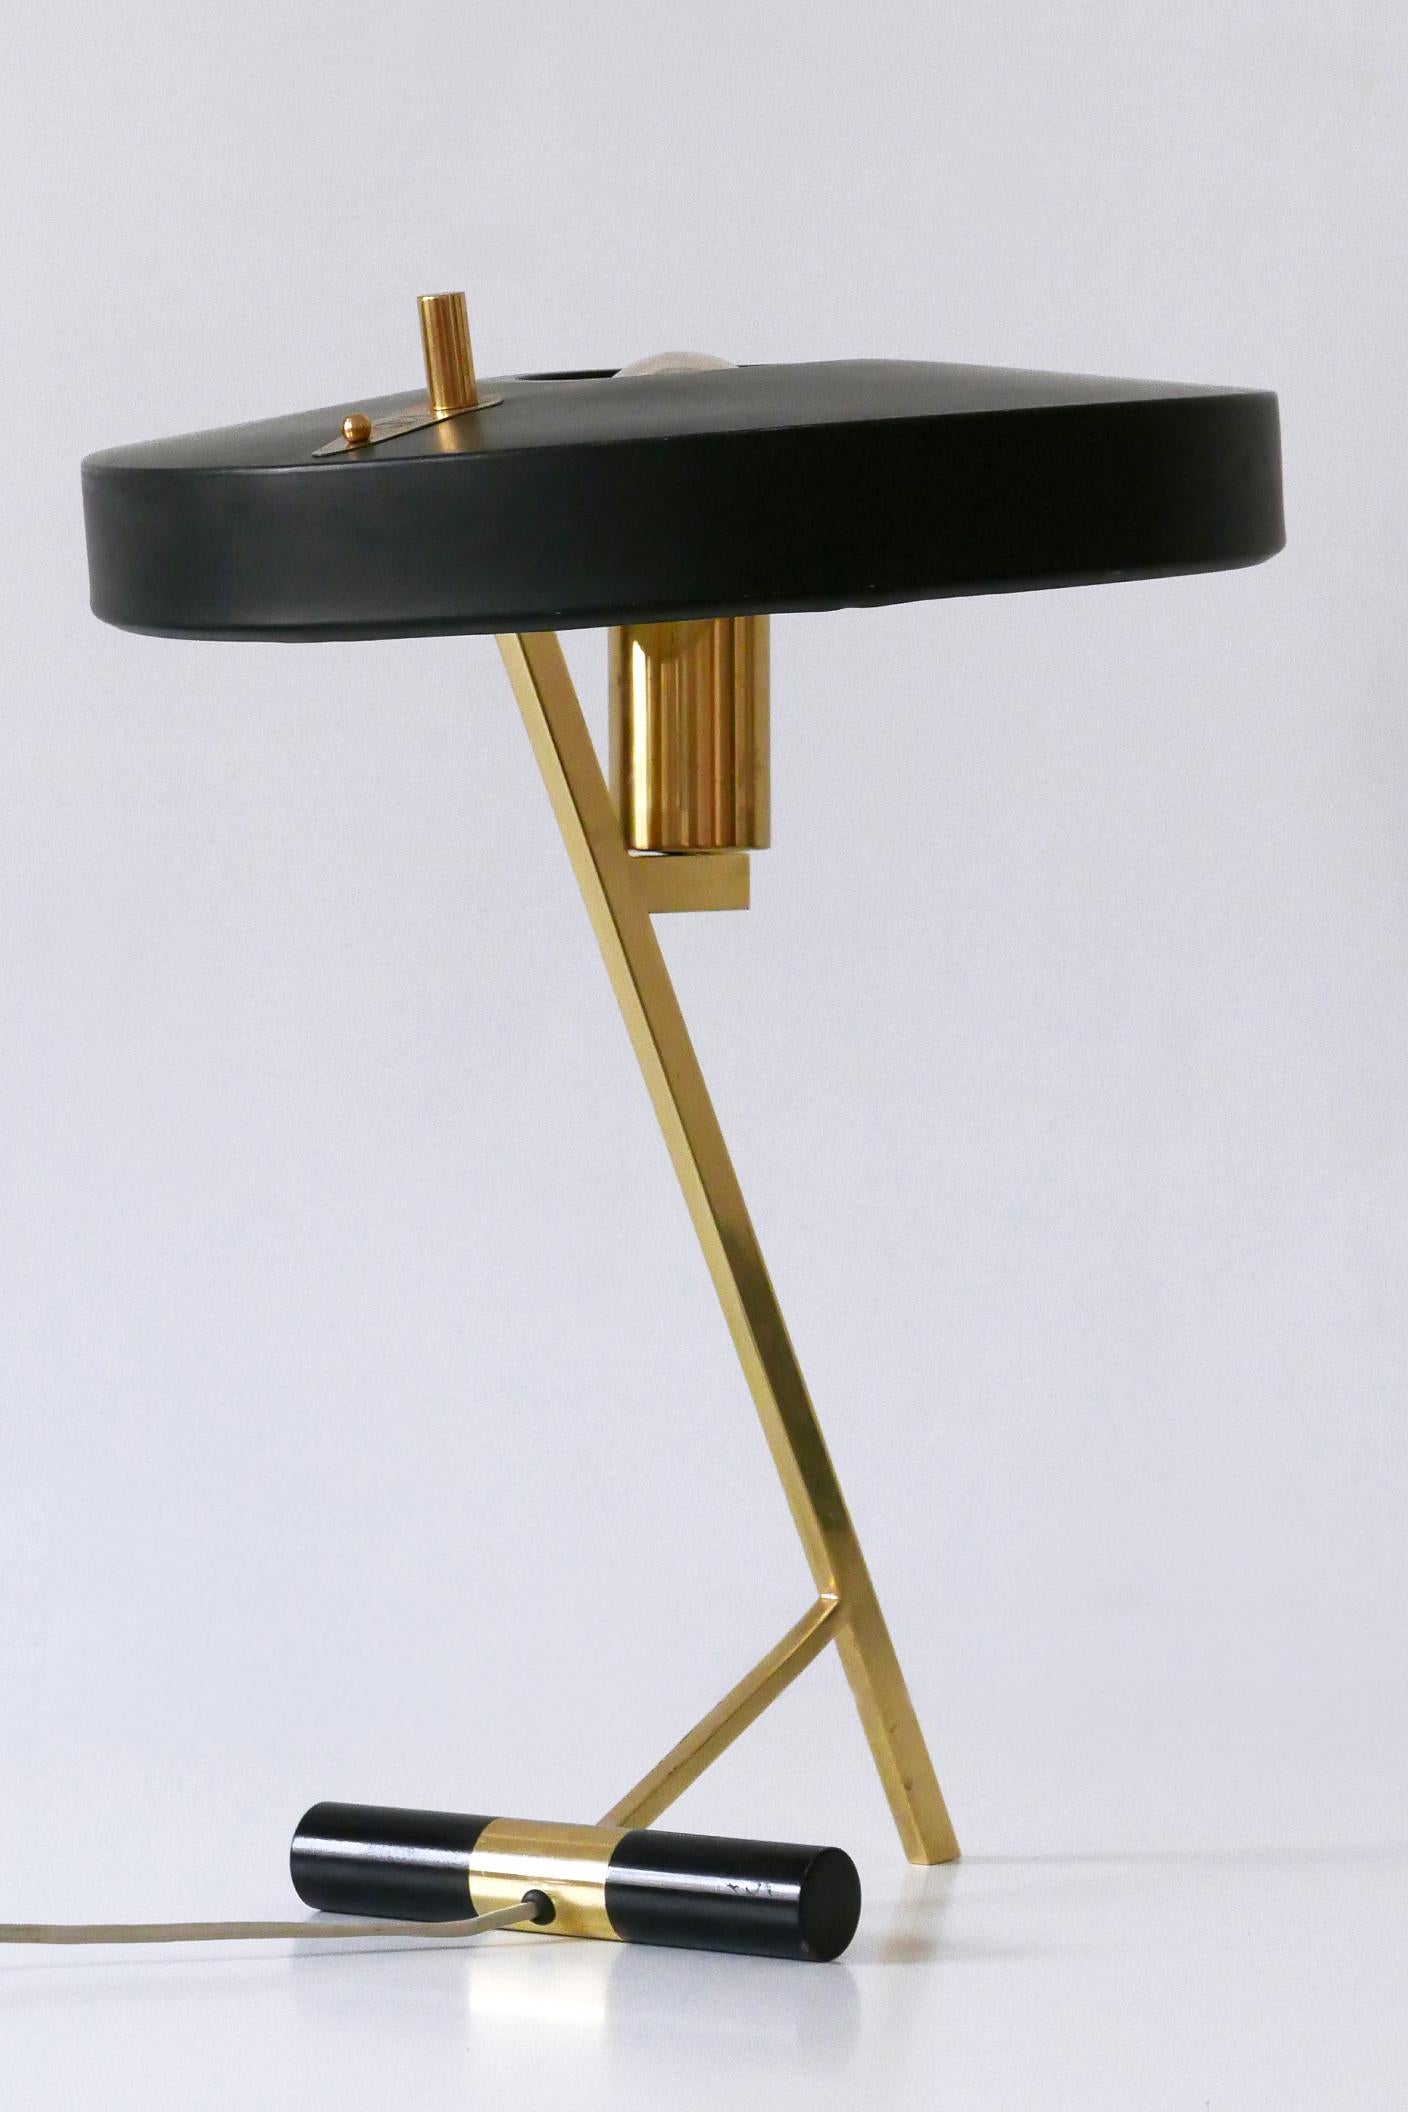 Elegante lampe de table ou de bureau en Z de style moderne du milieu du siècle. Conçu par Louis Kalff pour Philips, Pays-Bas, années 1950.

Réalisée en laiton et en aluminium, la lampe de table est livrée avec 1 douille à vis E27 / E26 Edison, est